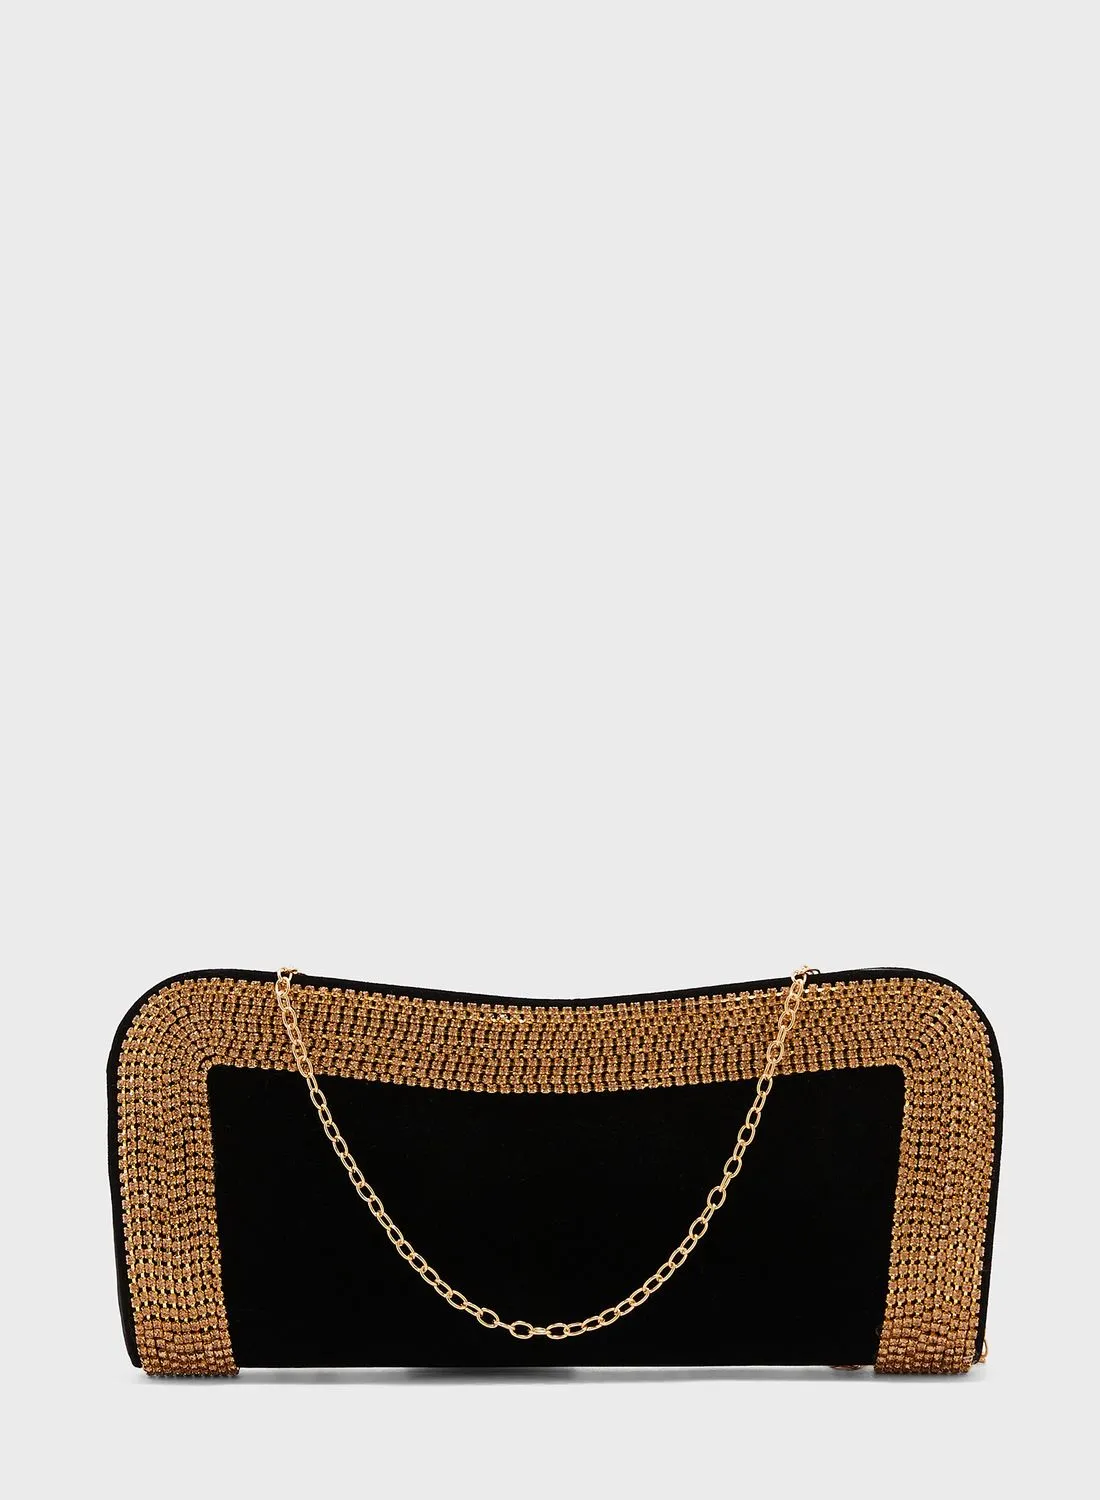 حقيبة يد Ella ذات إصدار محدود ومفصلة باللون الذهبي اللامع